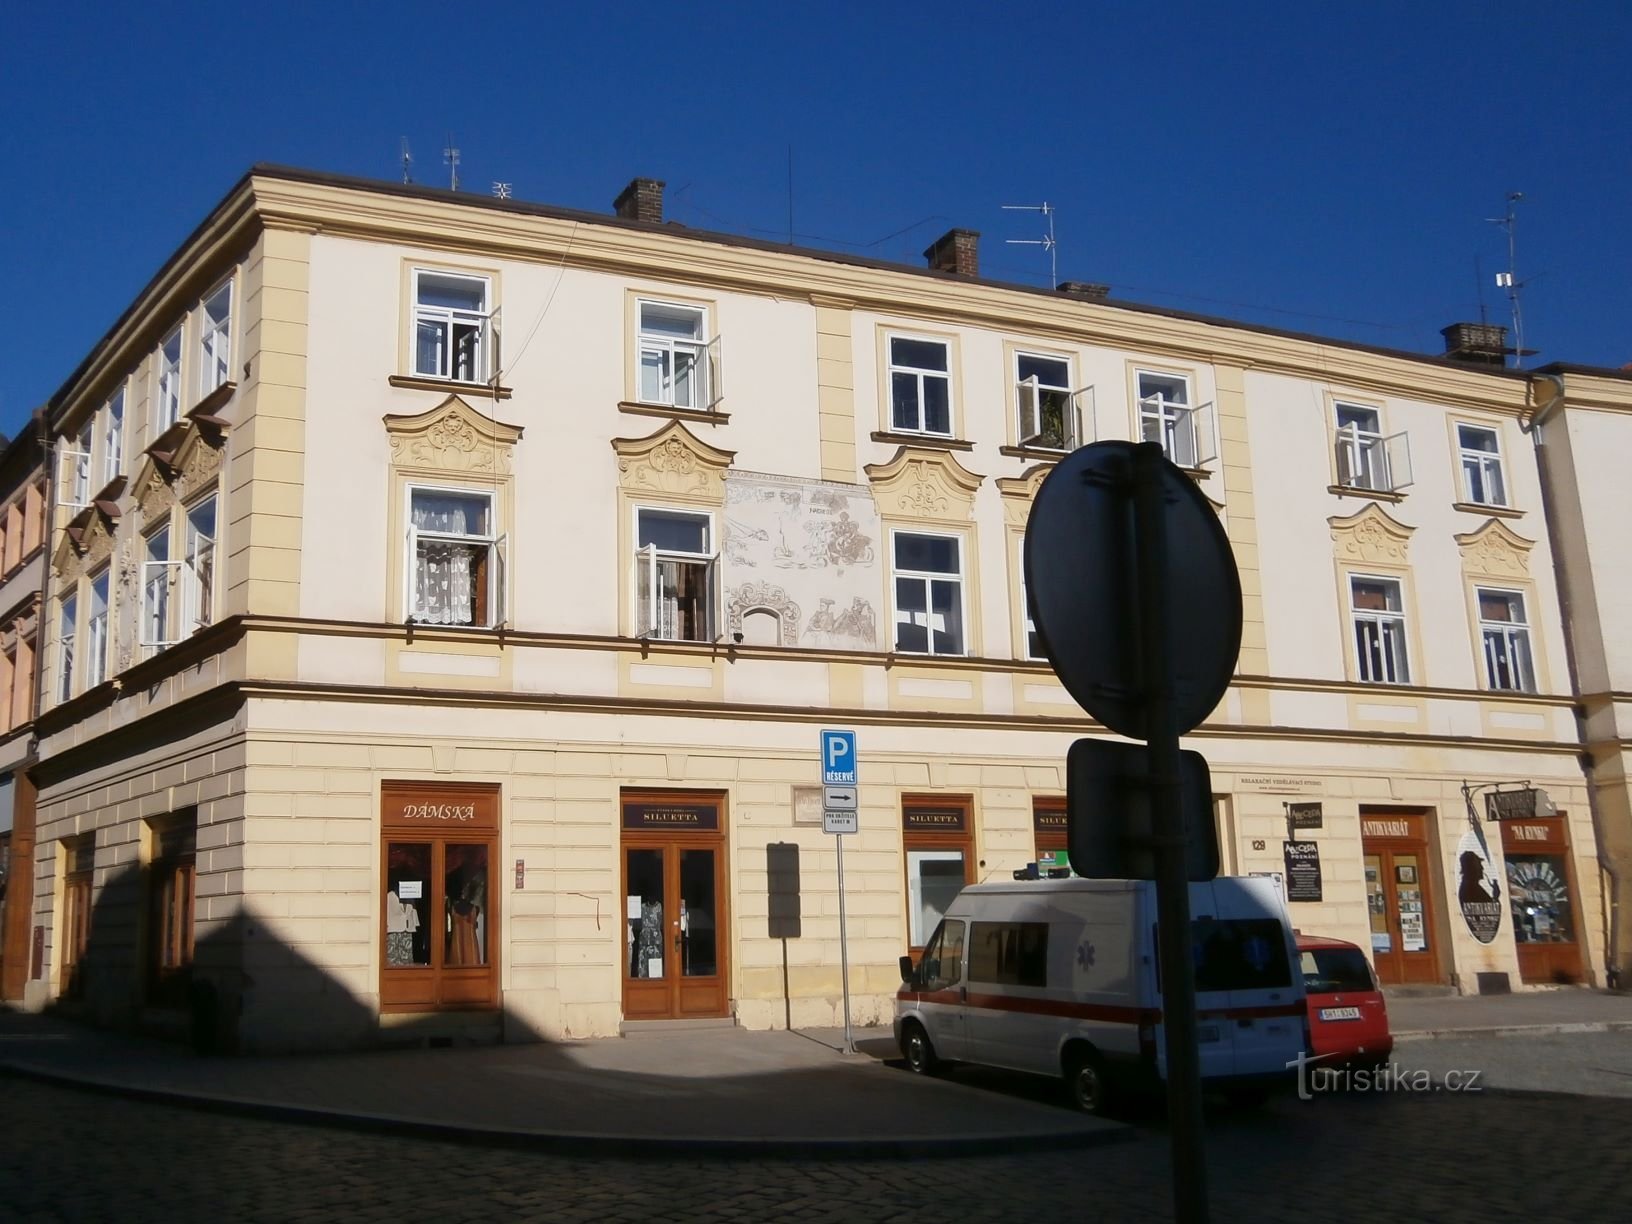 Malé náměstí no. 129 (Hradec Králové, April 2.8.2013, XNUMX)